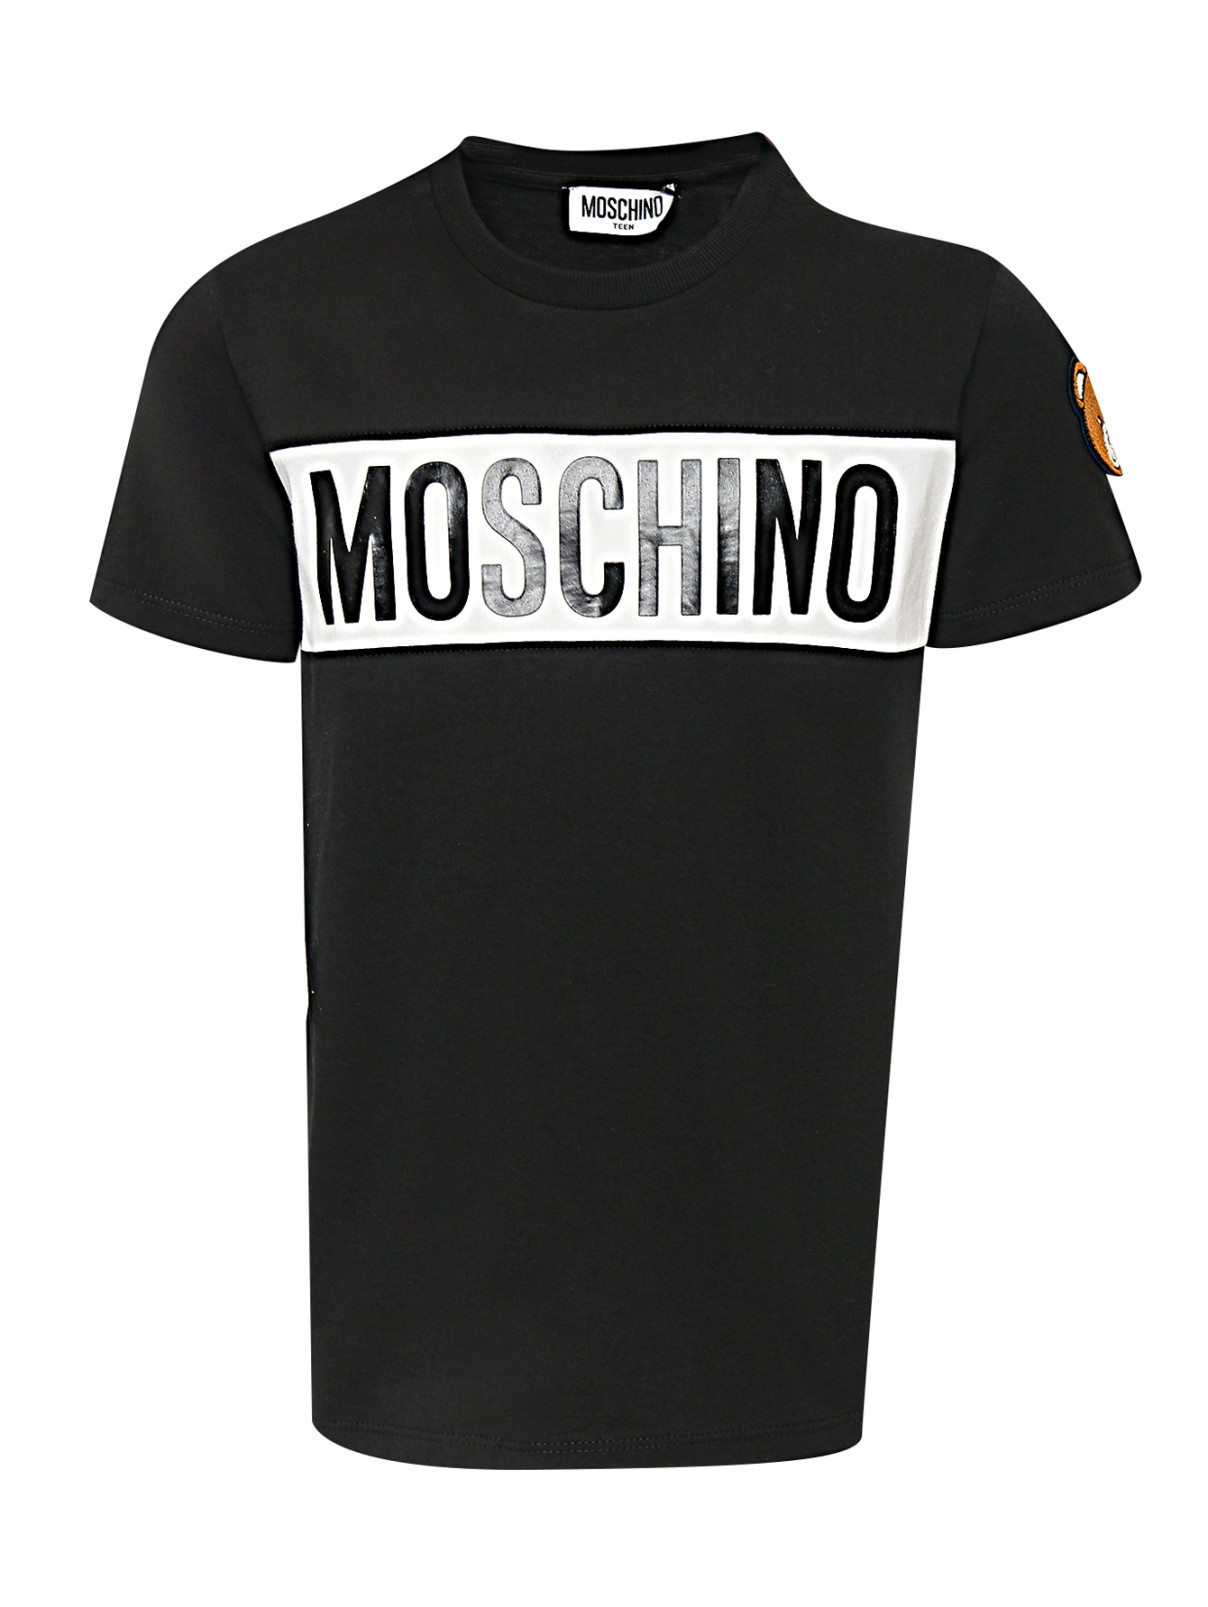 Трикотажная футболка со вставкой Moschino  –  Общий вид  – Цвет:  Черный